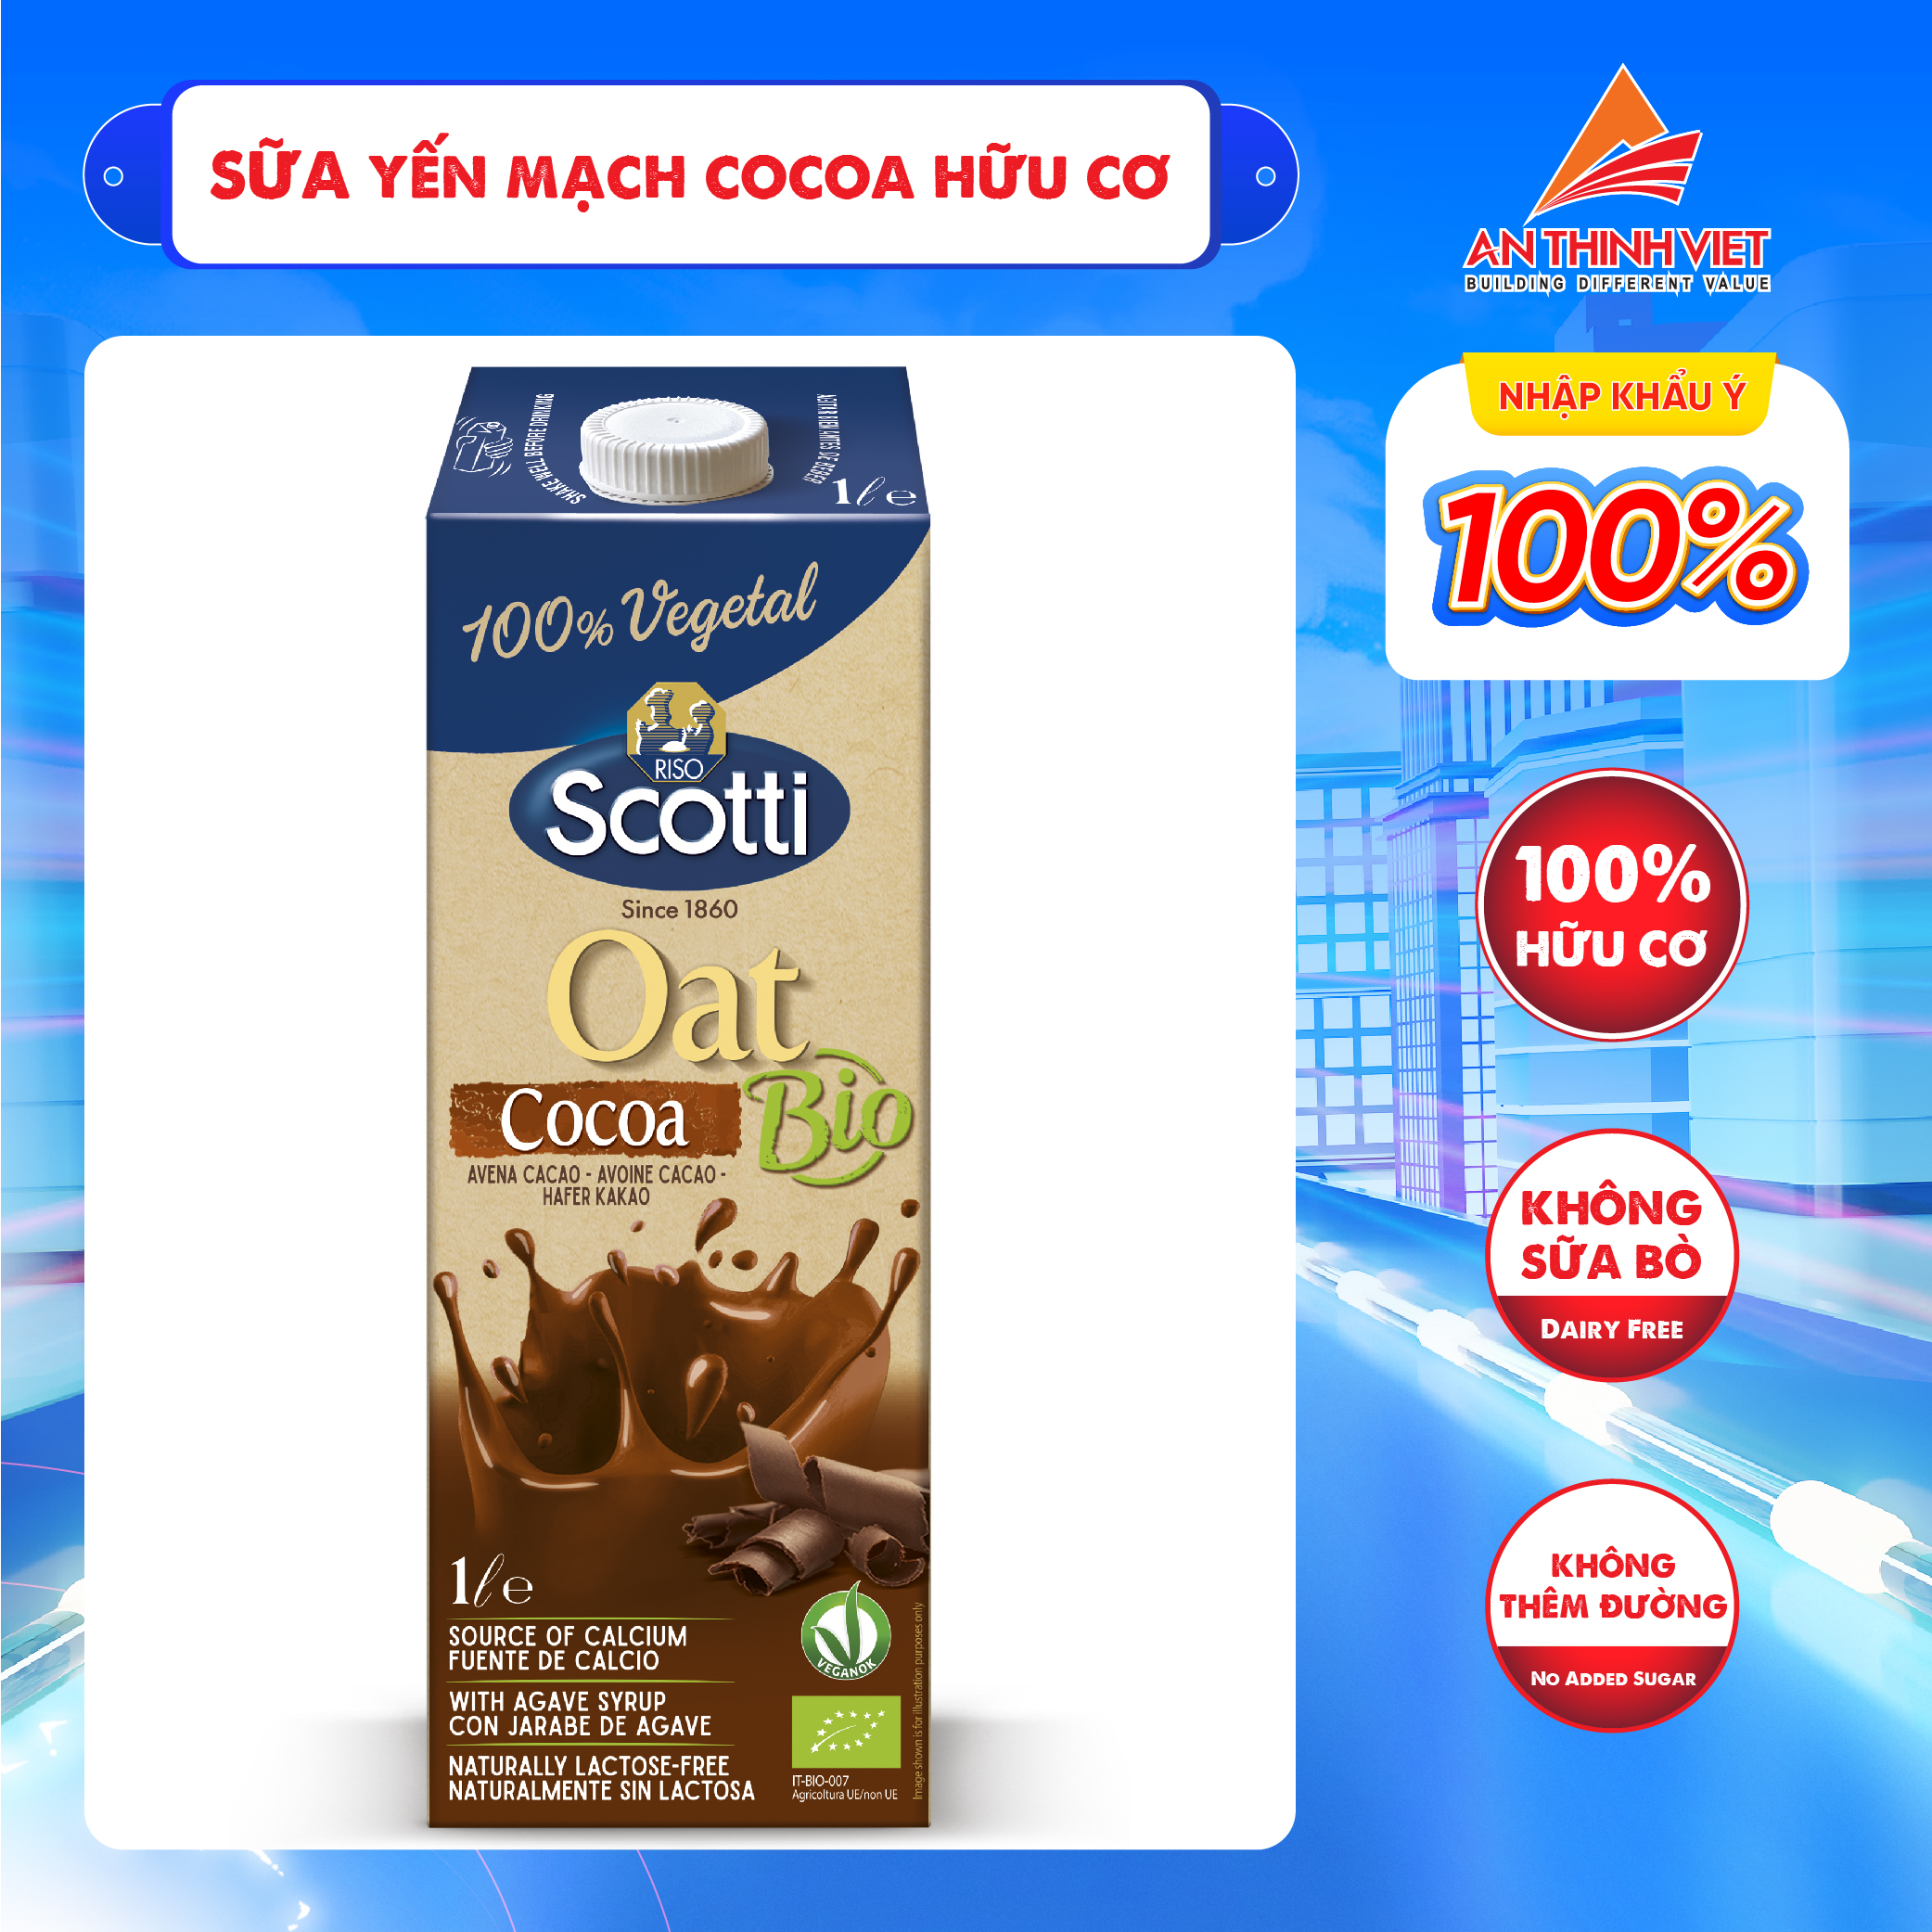 Sữa Yến Mạch Cocoa Riso Scotti - Oat Cocoa Drink - 1L